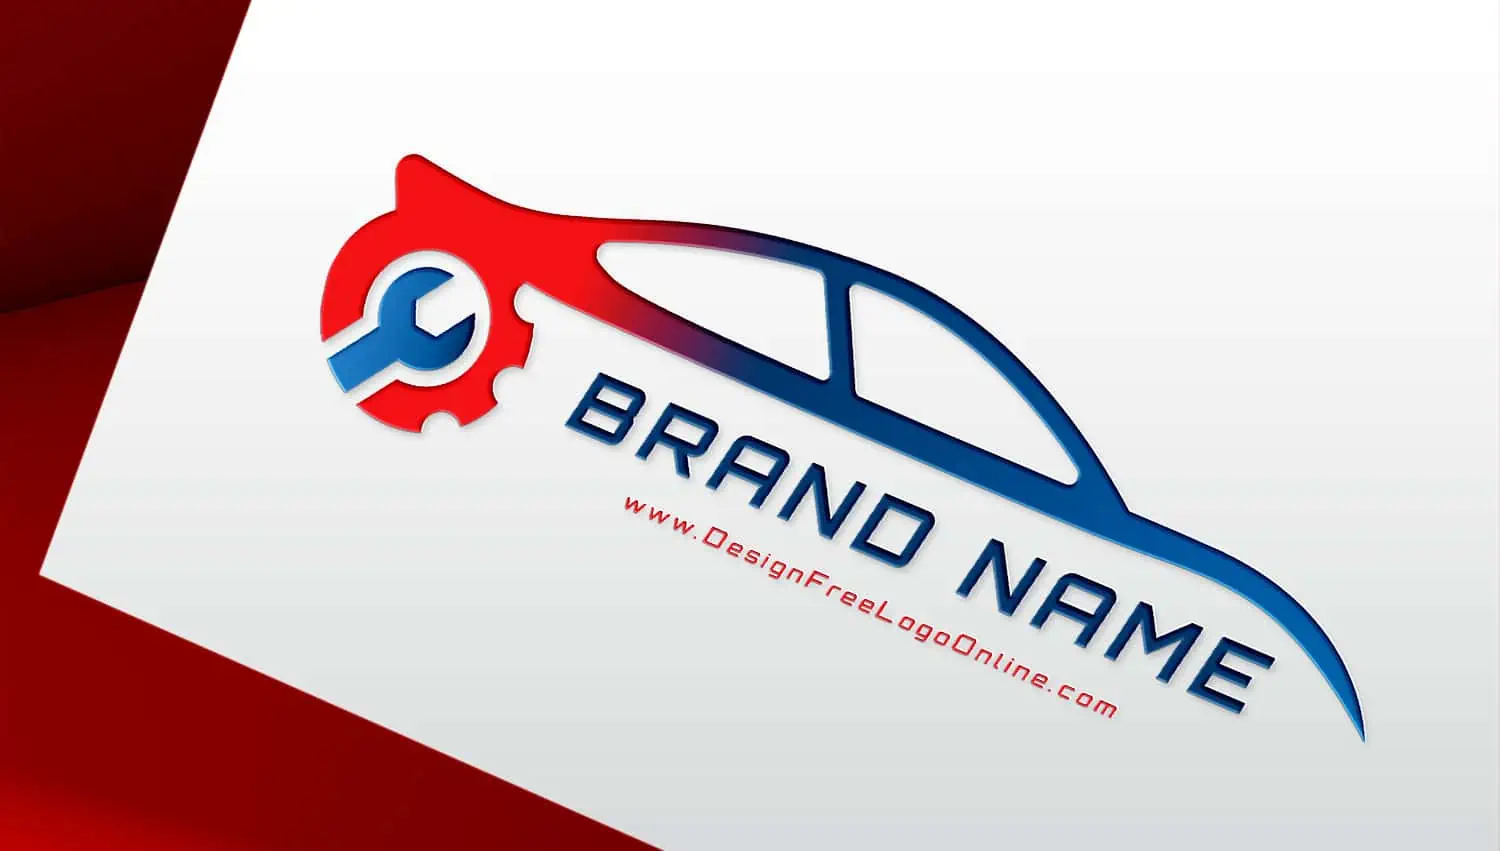 Conception de logos pour l'industrie automobile